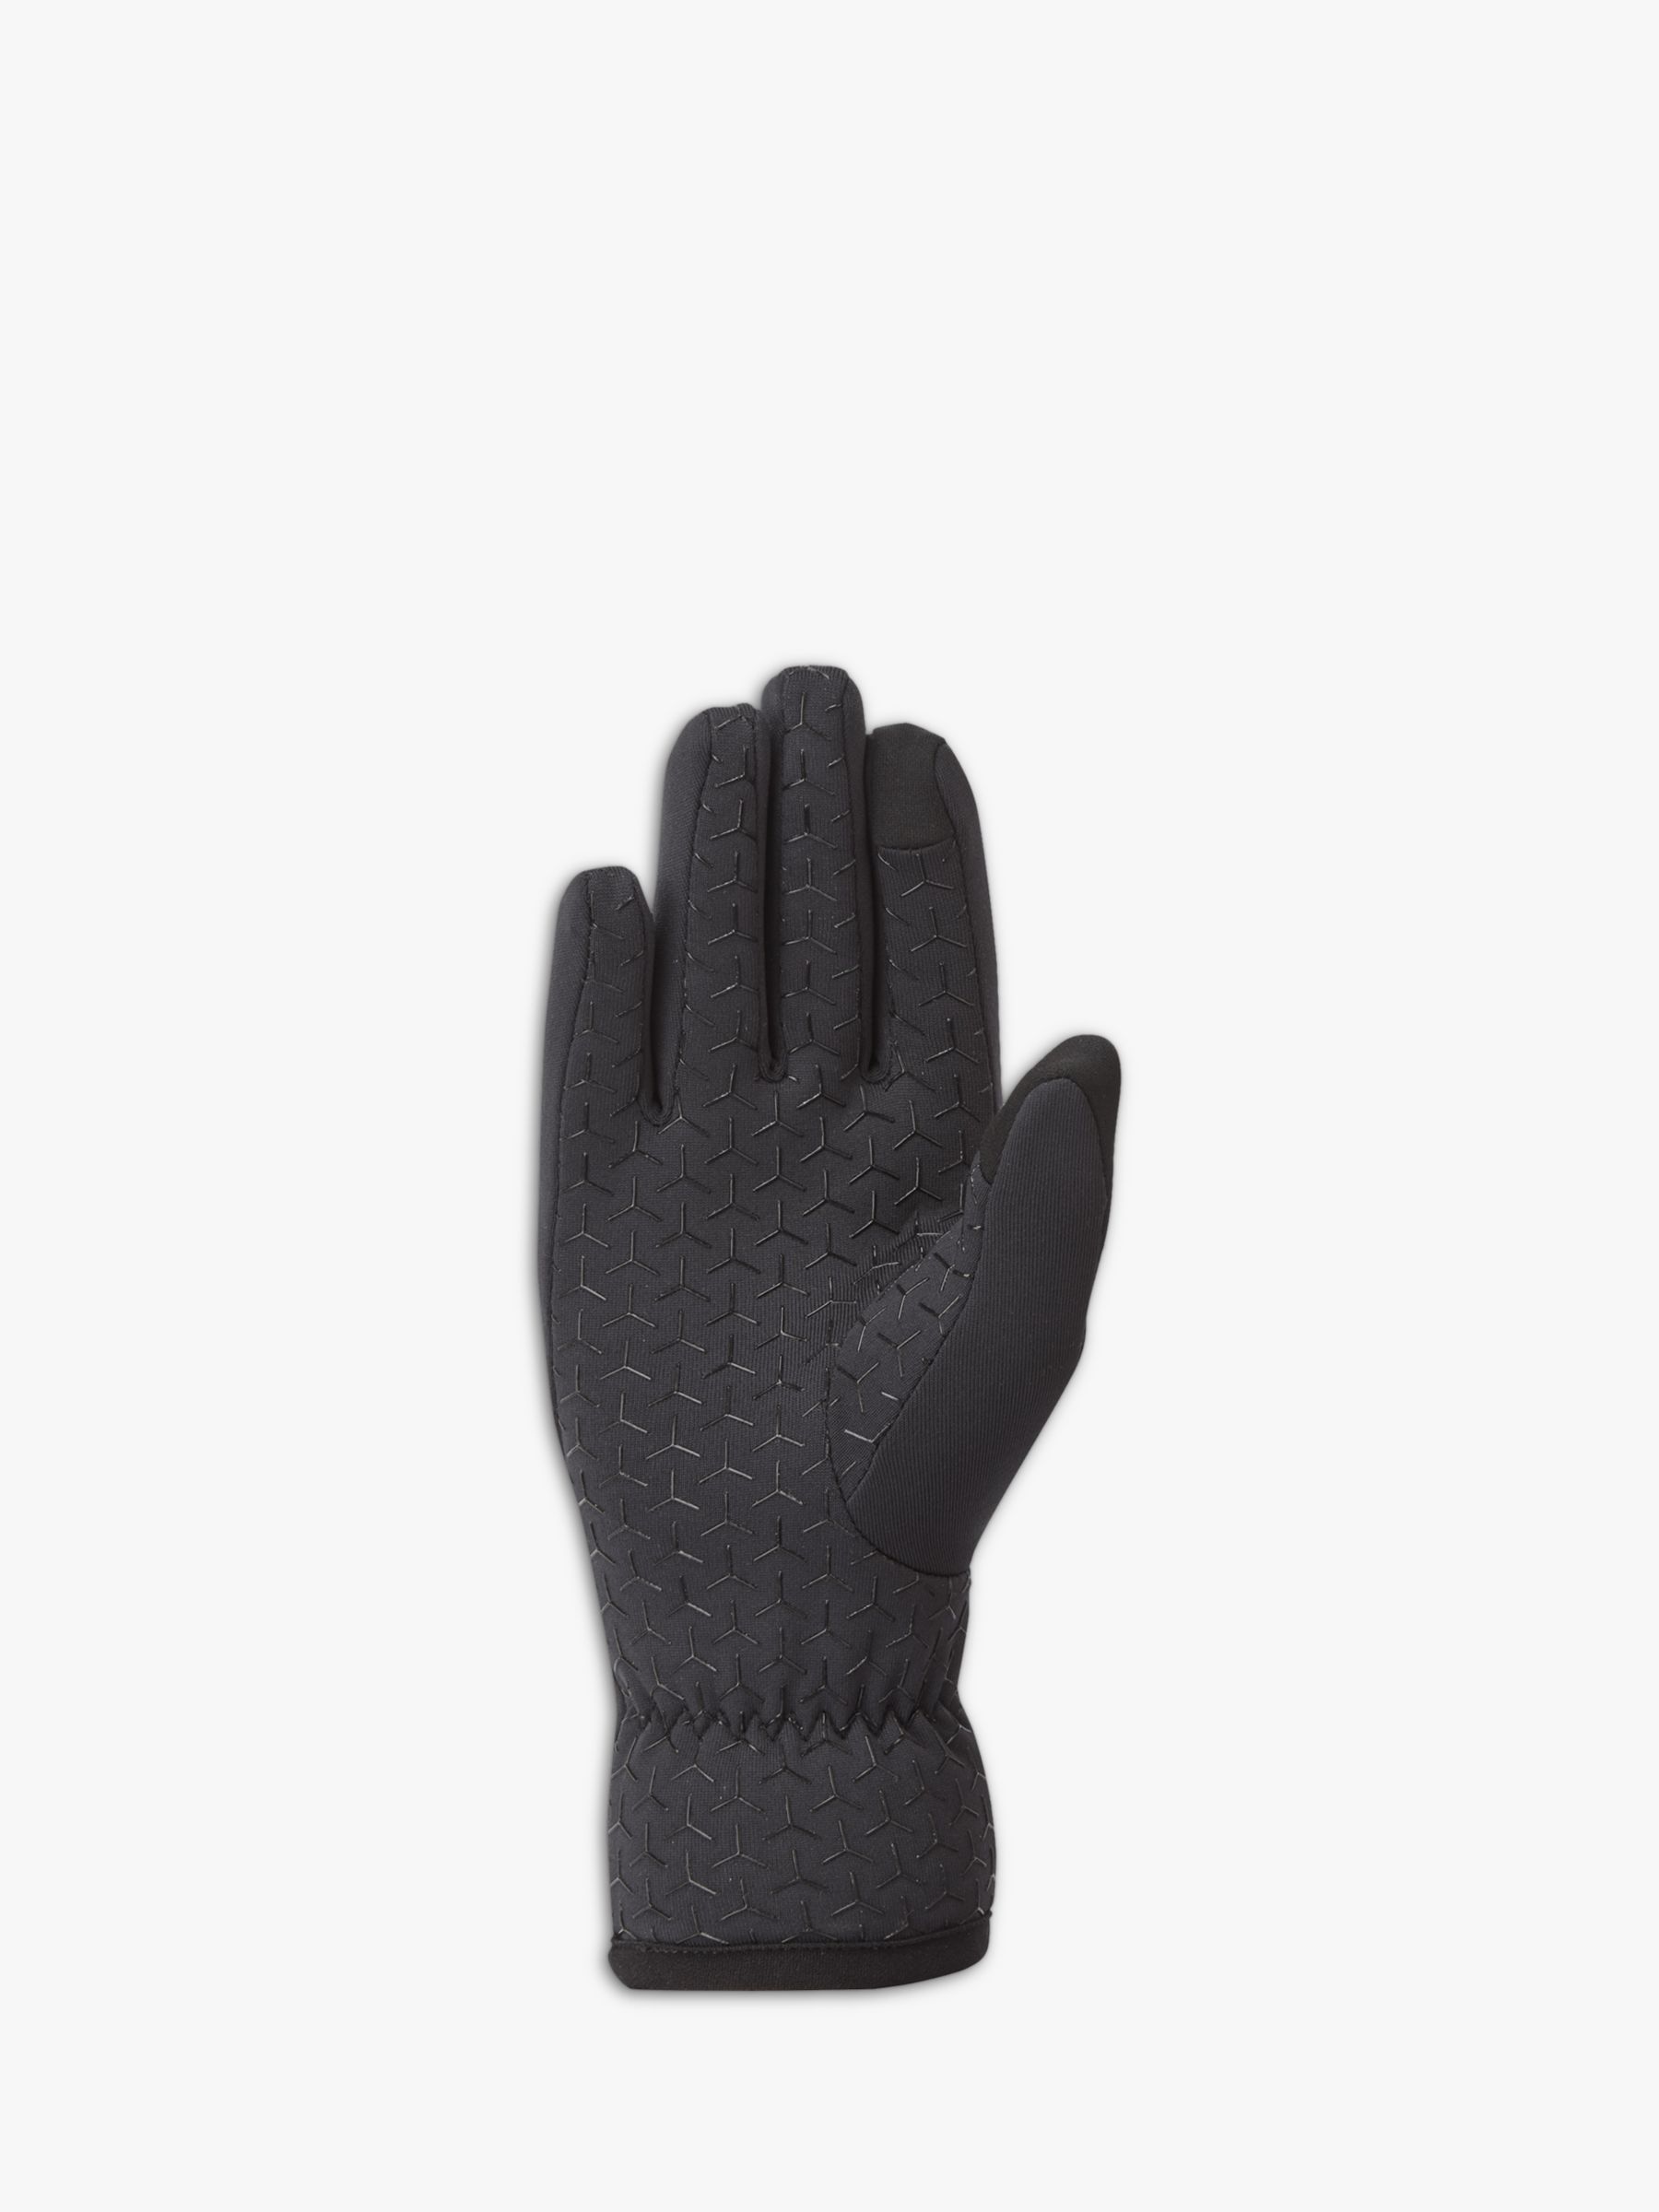 Montane Women's Fury XT Stretch Gloves, Black, XS